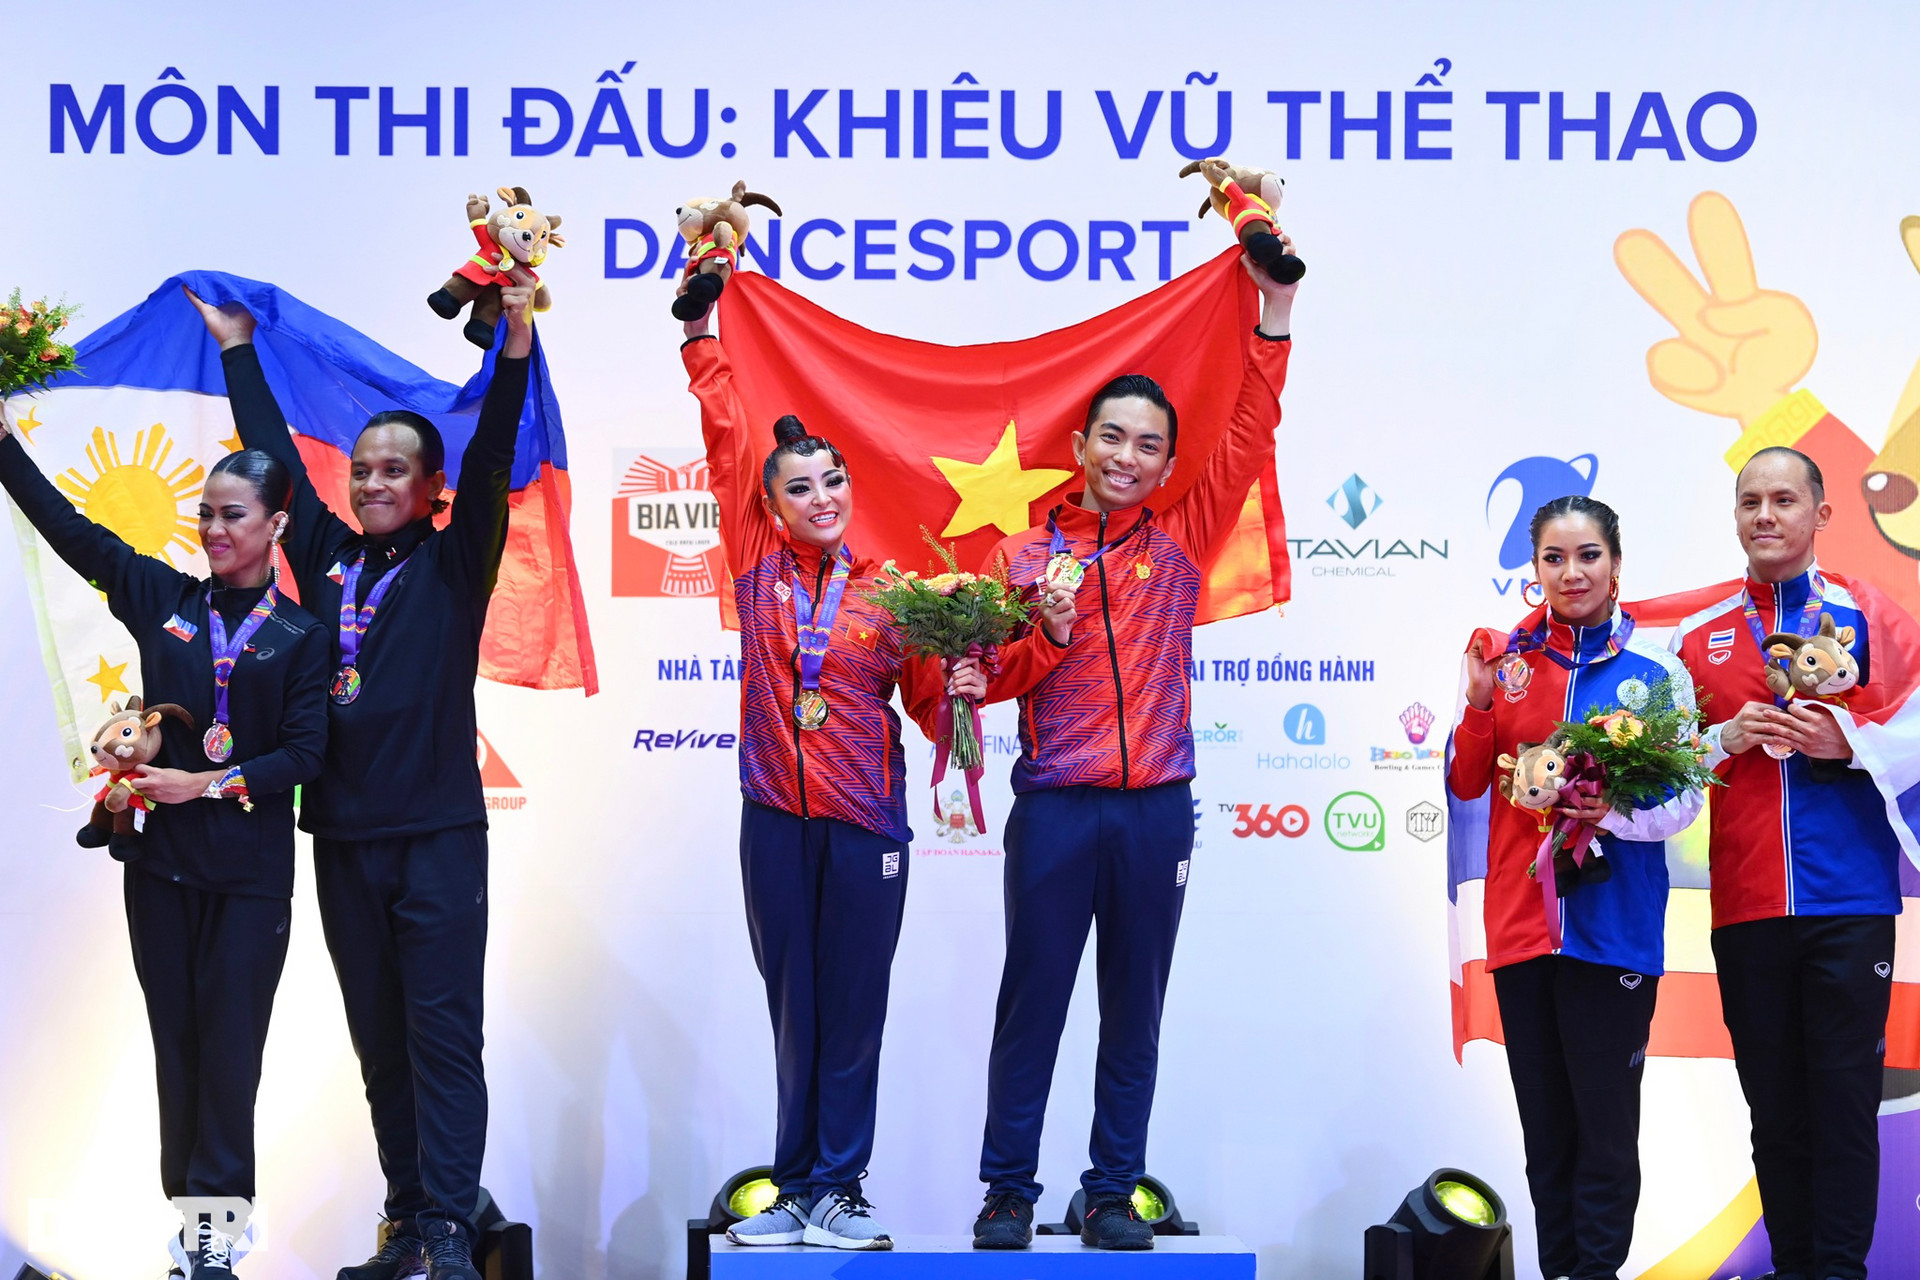 Ngắm màn khiêu vũ bốc lửa của 2 đôi VĐV Việt Nam giành 5 HCV Dance Sport - 22